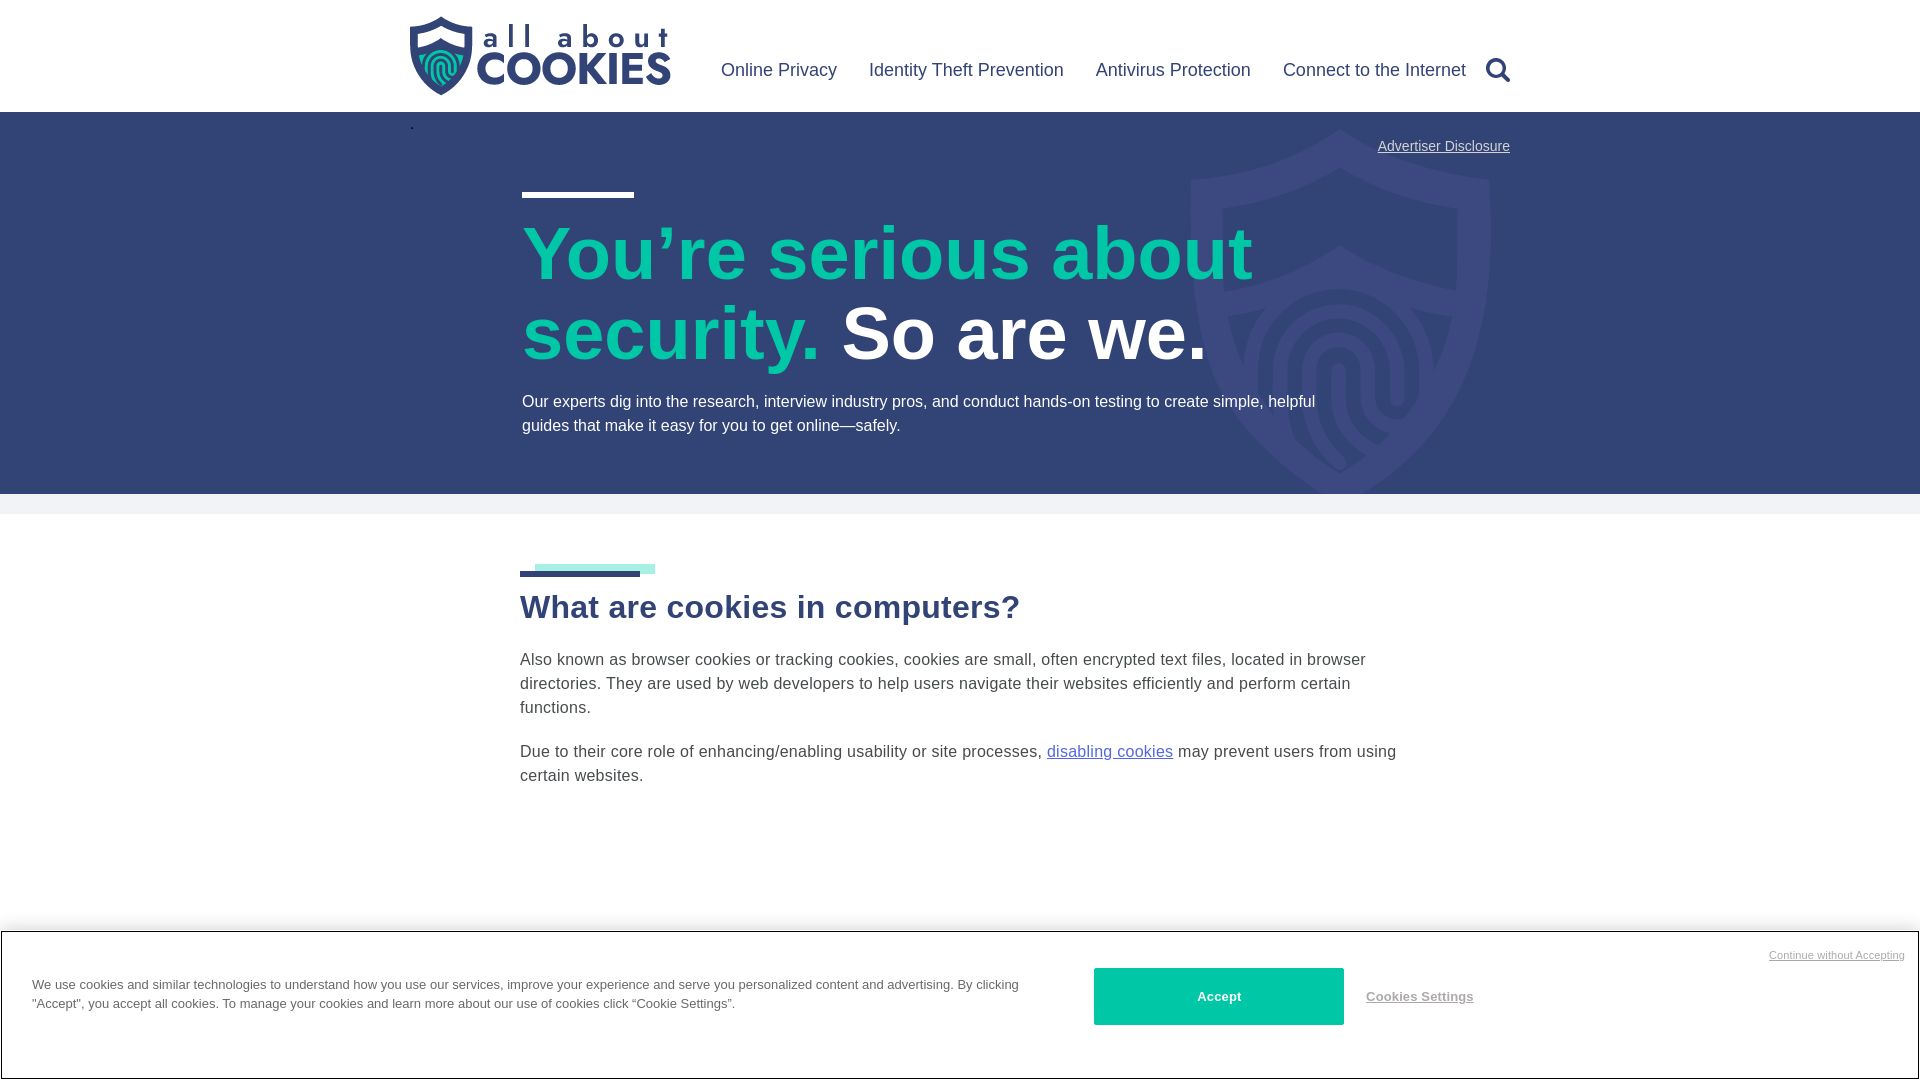 网站状态 allaboutcookies.org 是  在线的